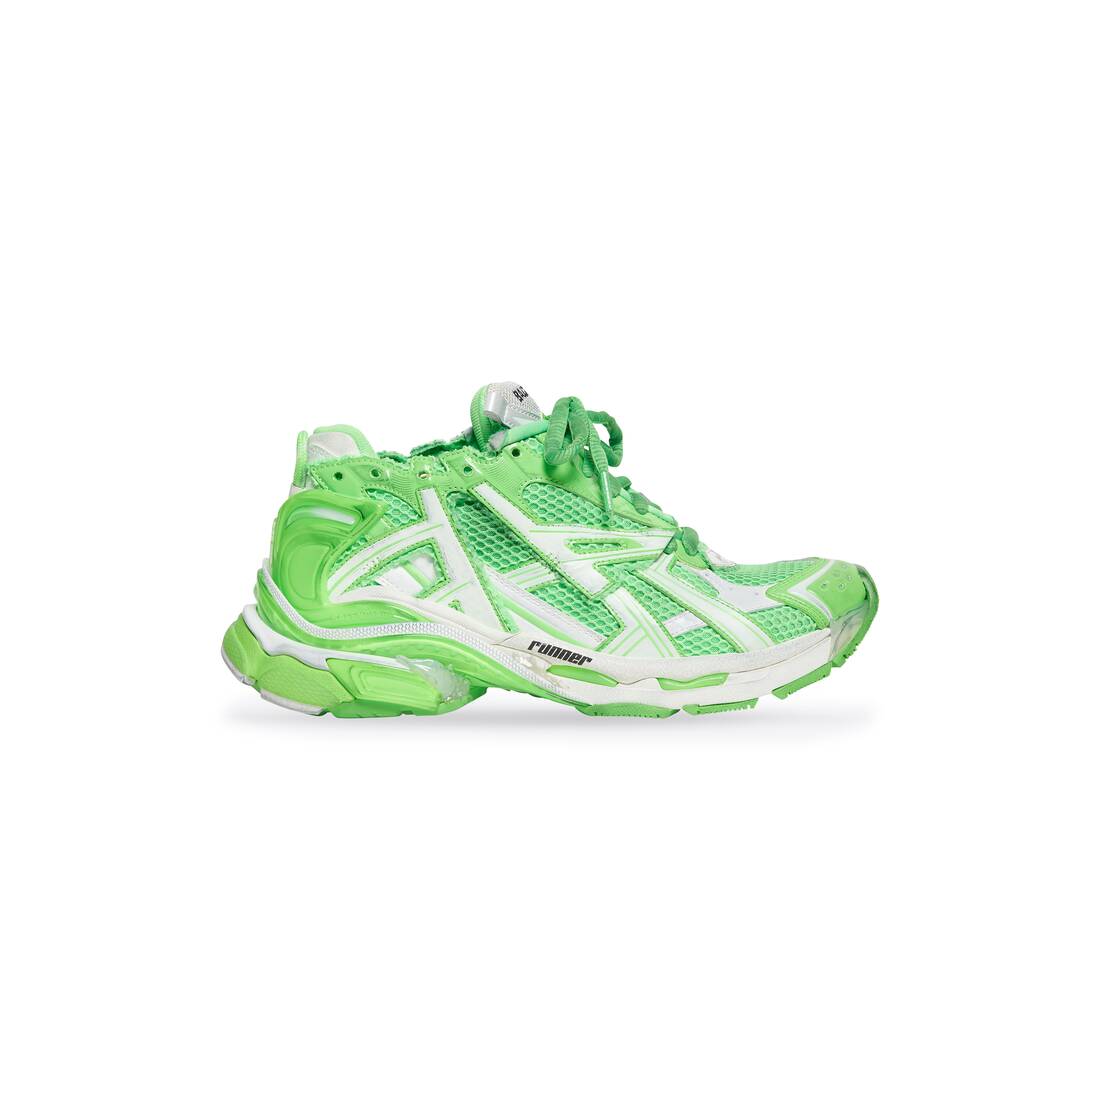 también Muy enojado yo lavo mi ropa Zapatillas Runner para Hombre en Verde Fluorescente | Balenciaga ES